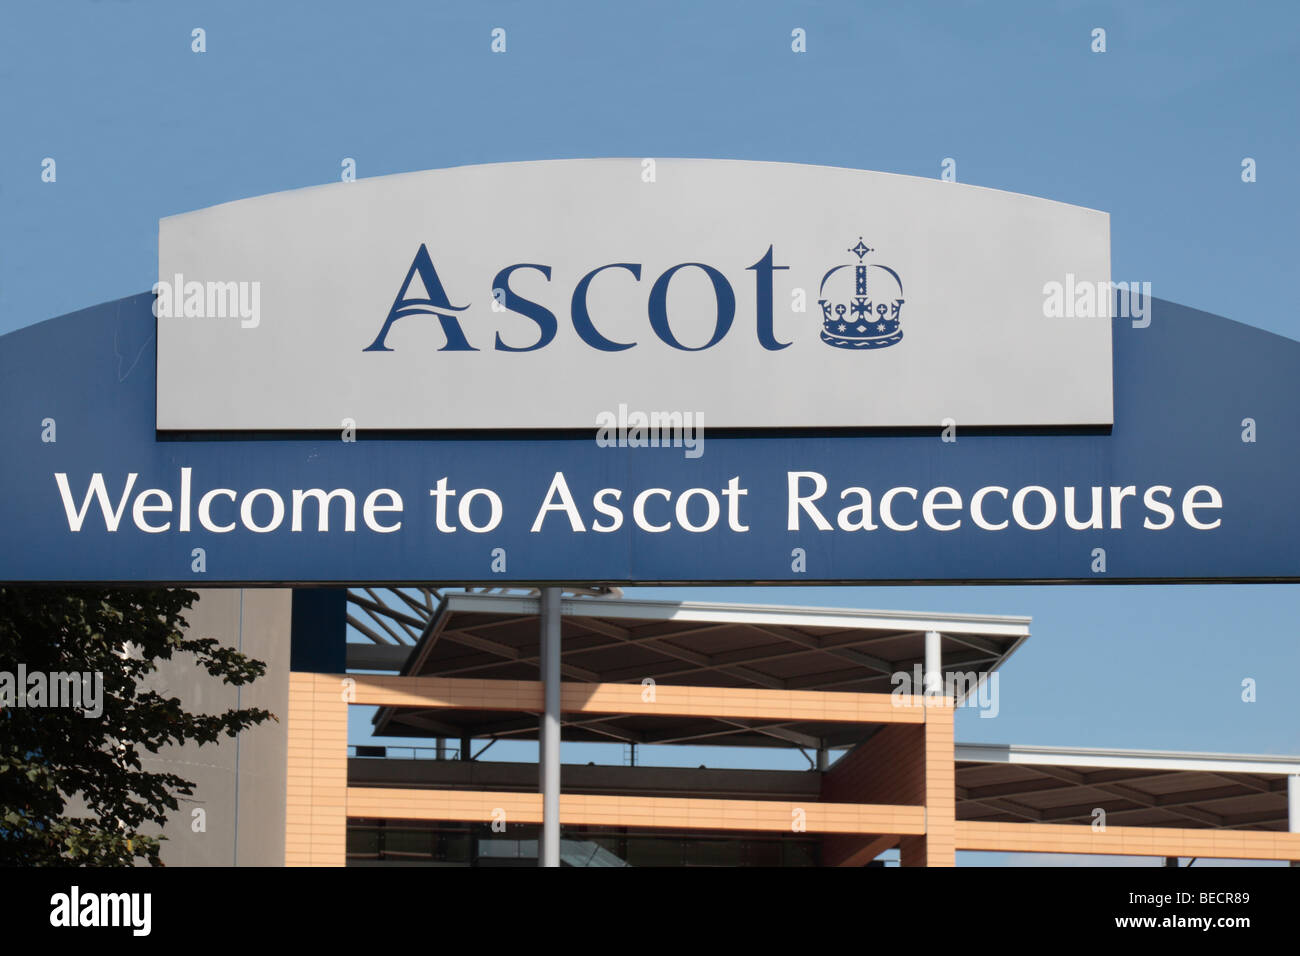 Ein "Herzlich willkommen in Ascot Racecourse" Zeichen an einem Eingang zur Pferderennbahn Ascot, Berkshire, UK. (Dieses Bild wurde geändert) Stockfoto